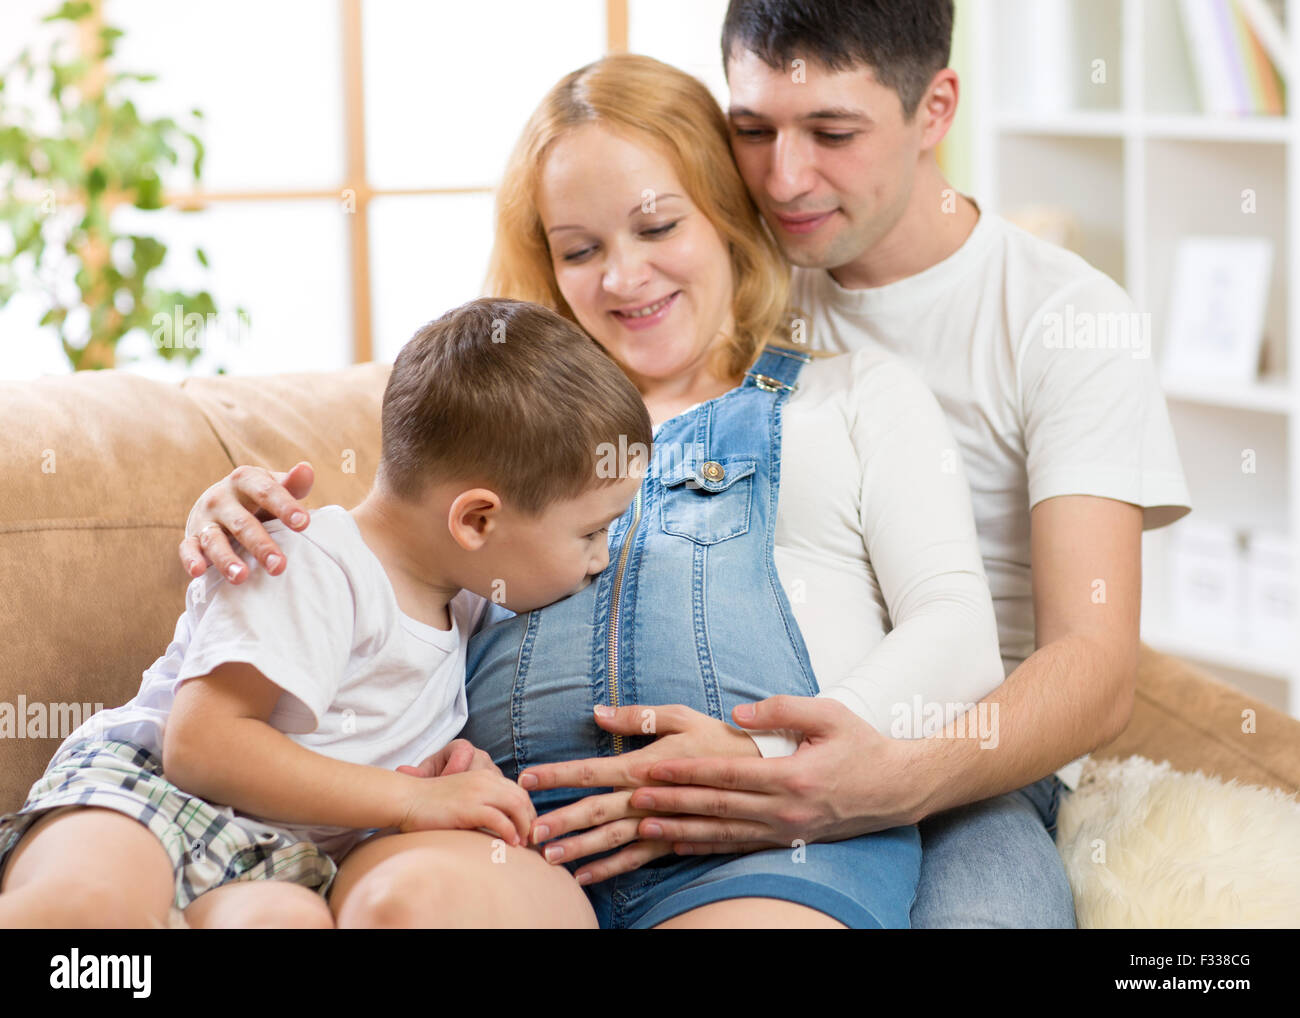 Familia esperando bebé. Niño chico besando a su hermano por nacer en el vientre de la madre embarazada. Foto de stock